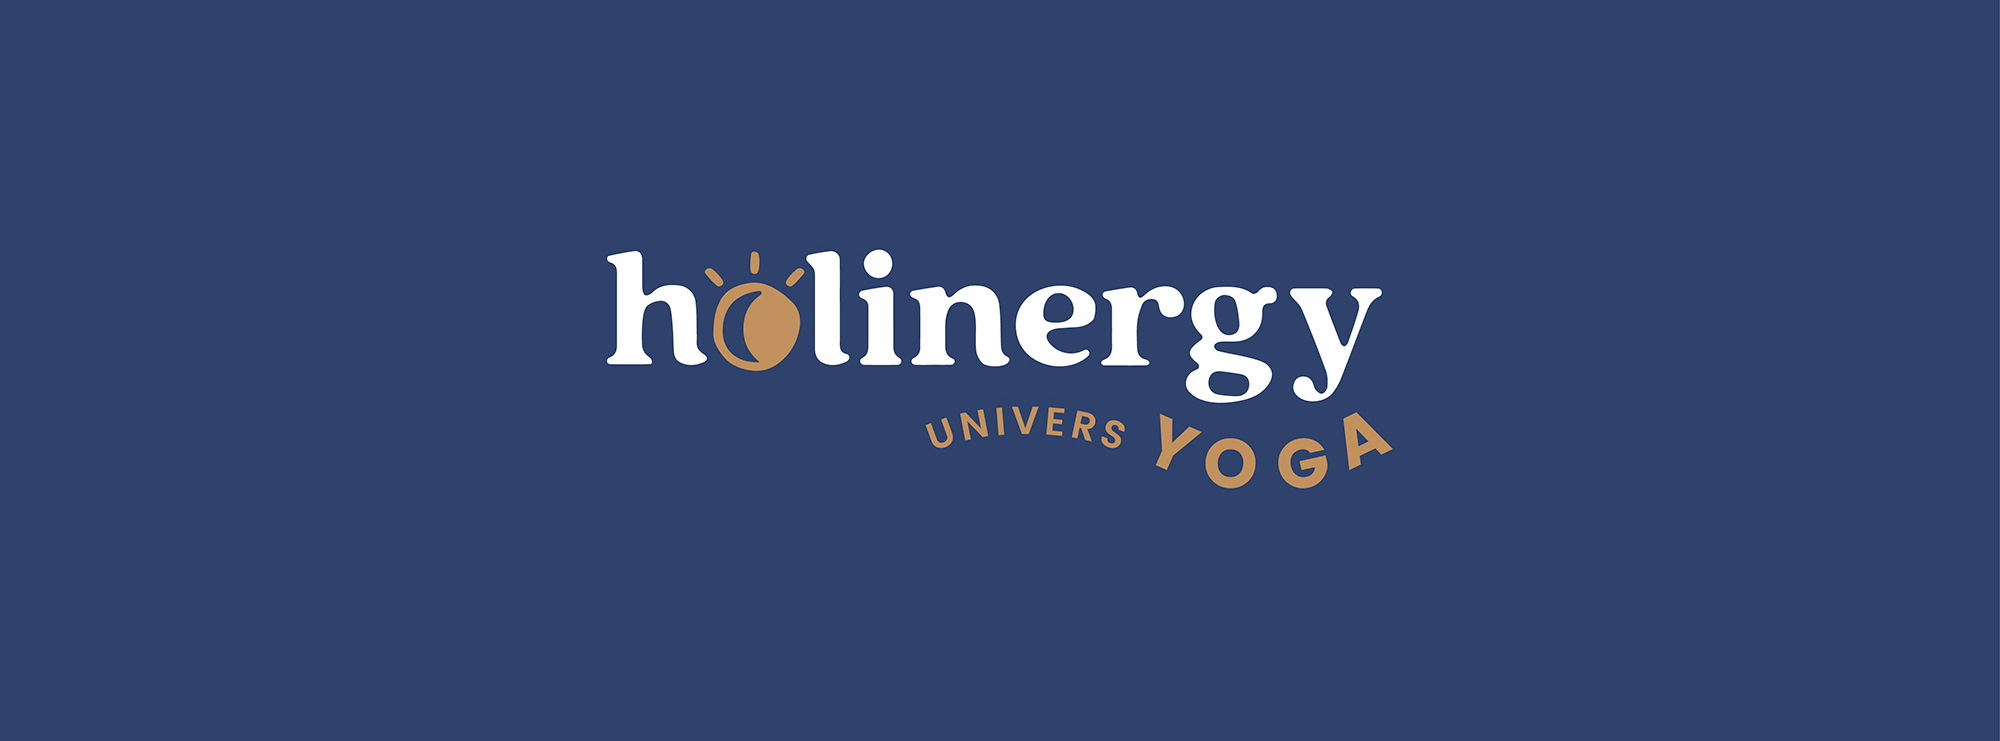 logo Holinergy Yoga